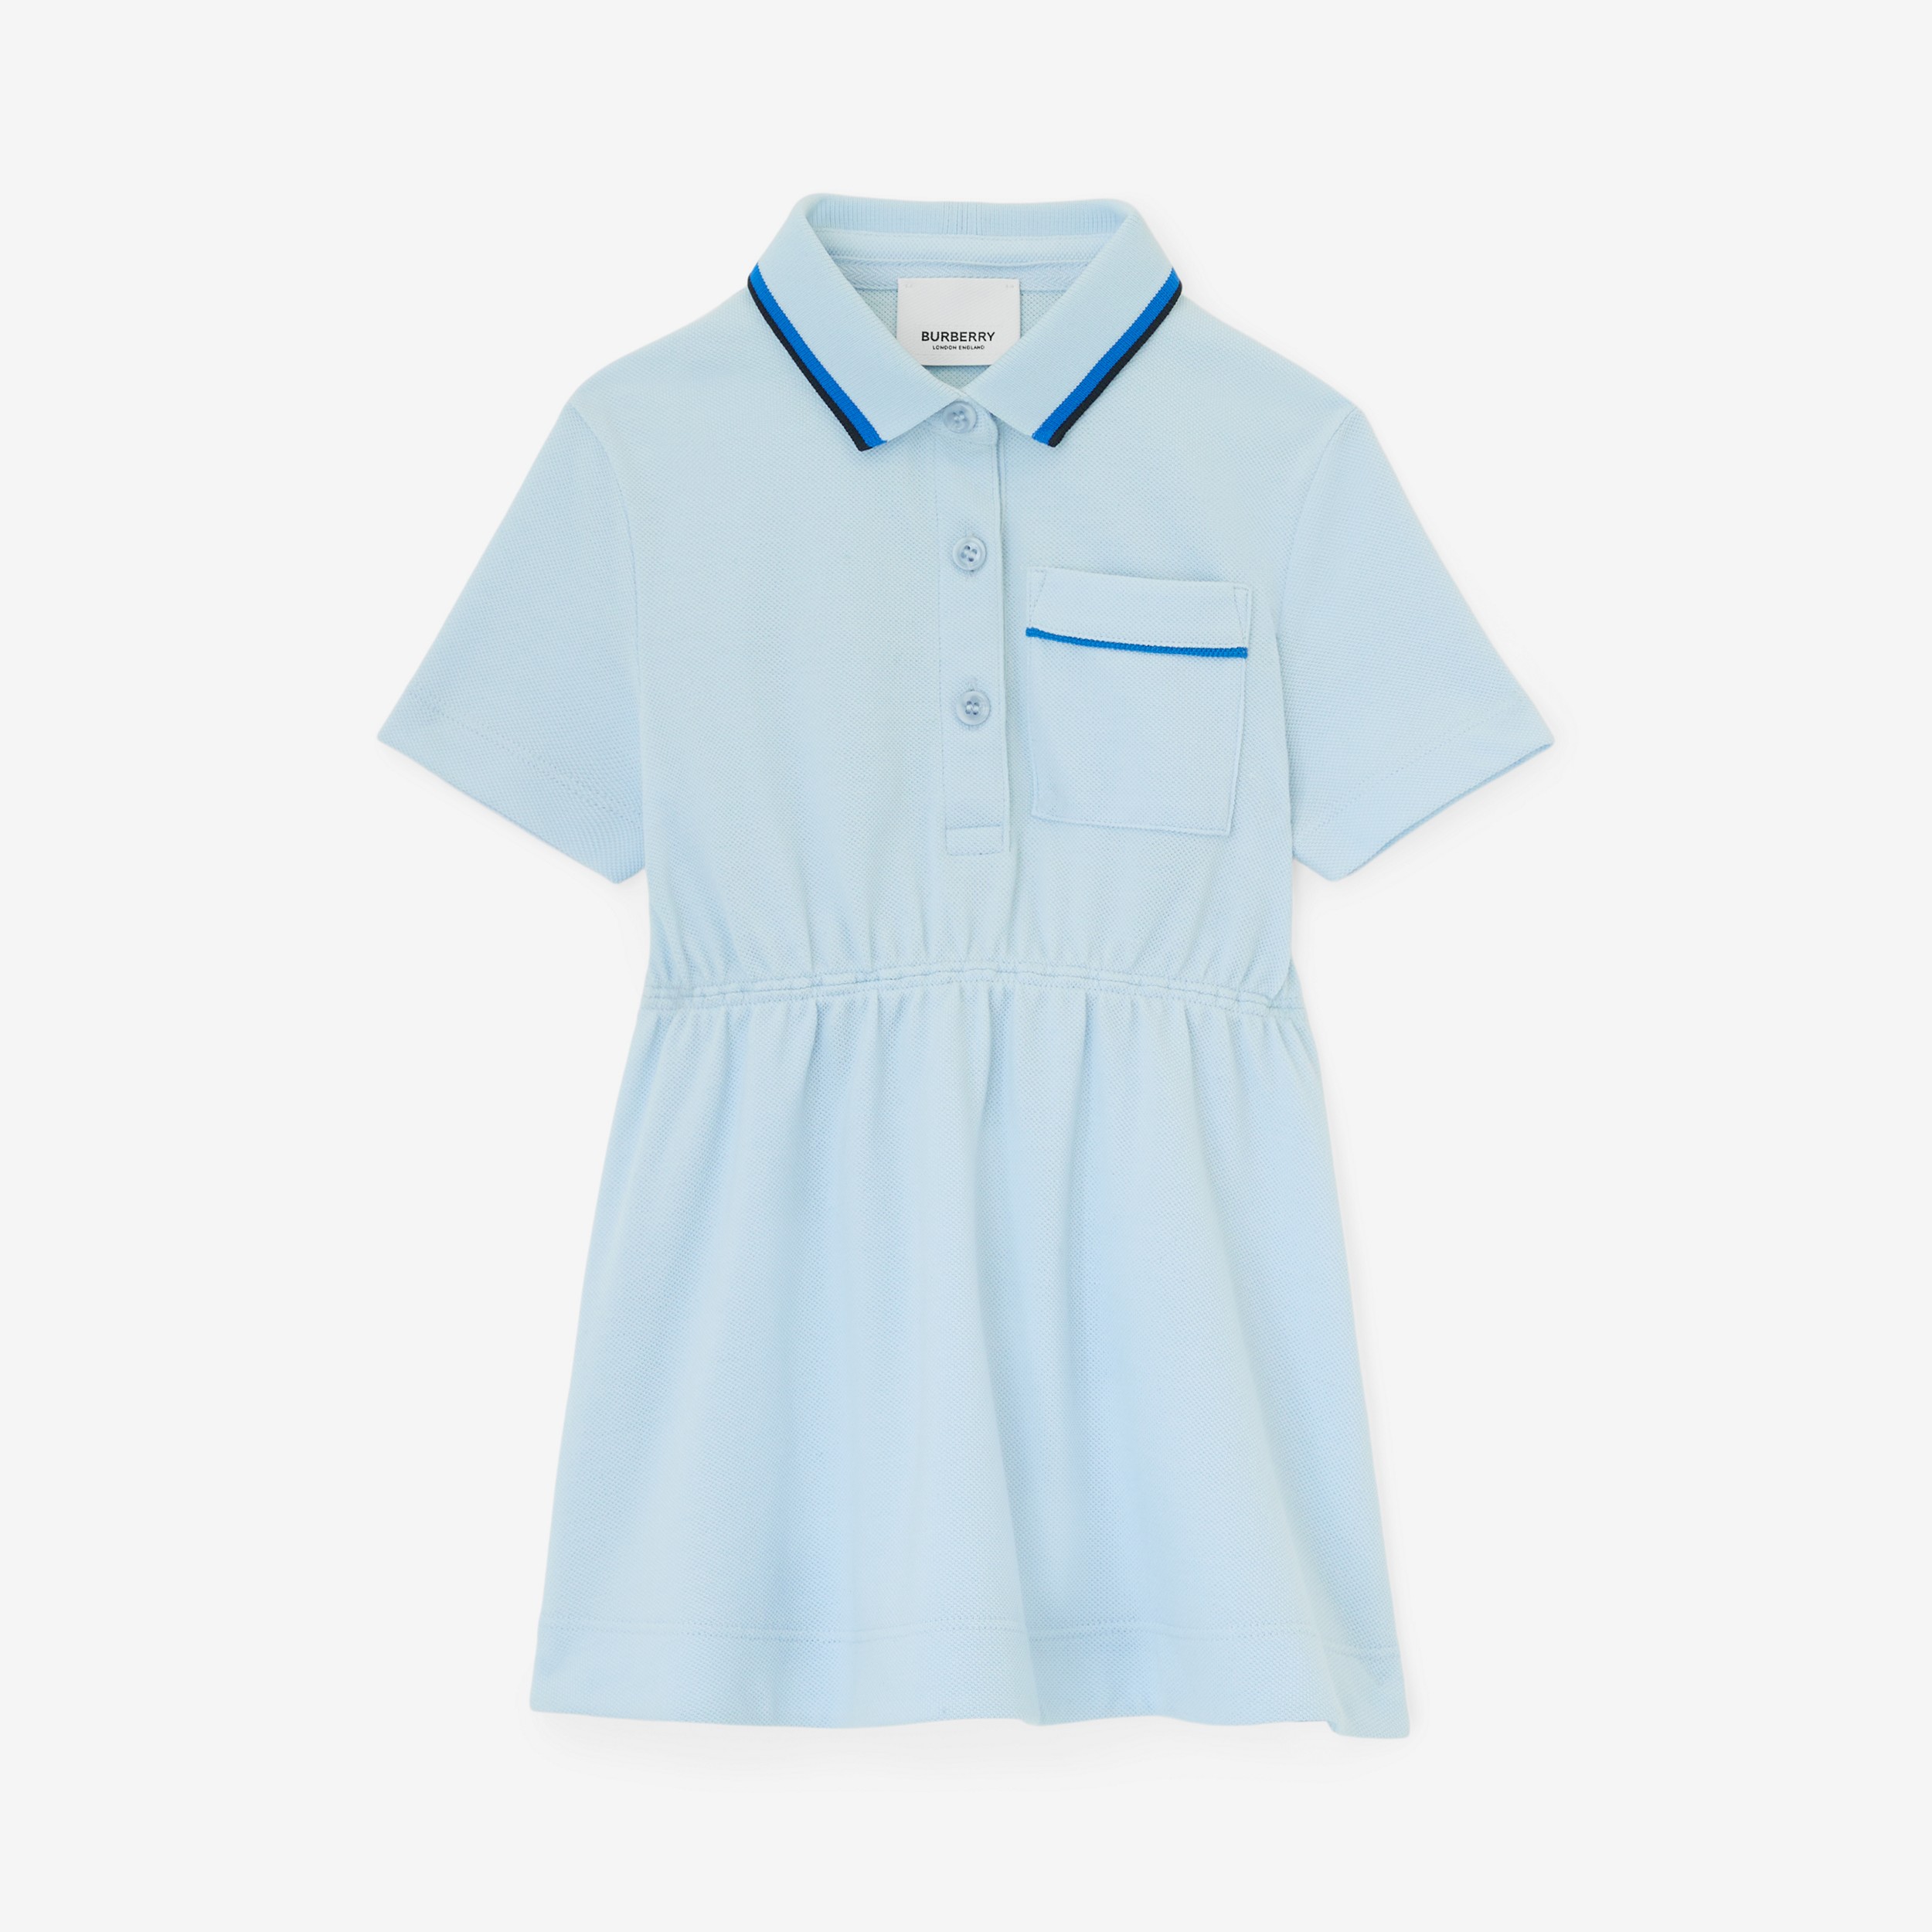 Vestitino stile polo in cotone piqué con stampa logo in corsivo (Blu Pallido) - Bambini | Sito ufficiale Burberry® - 1